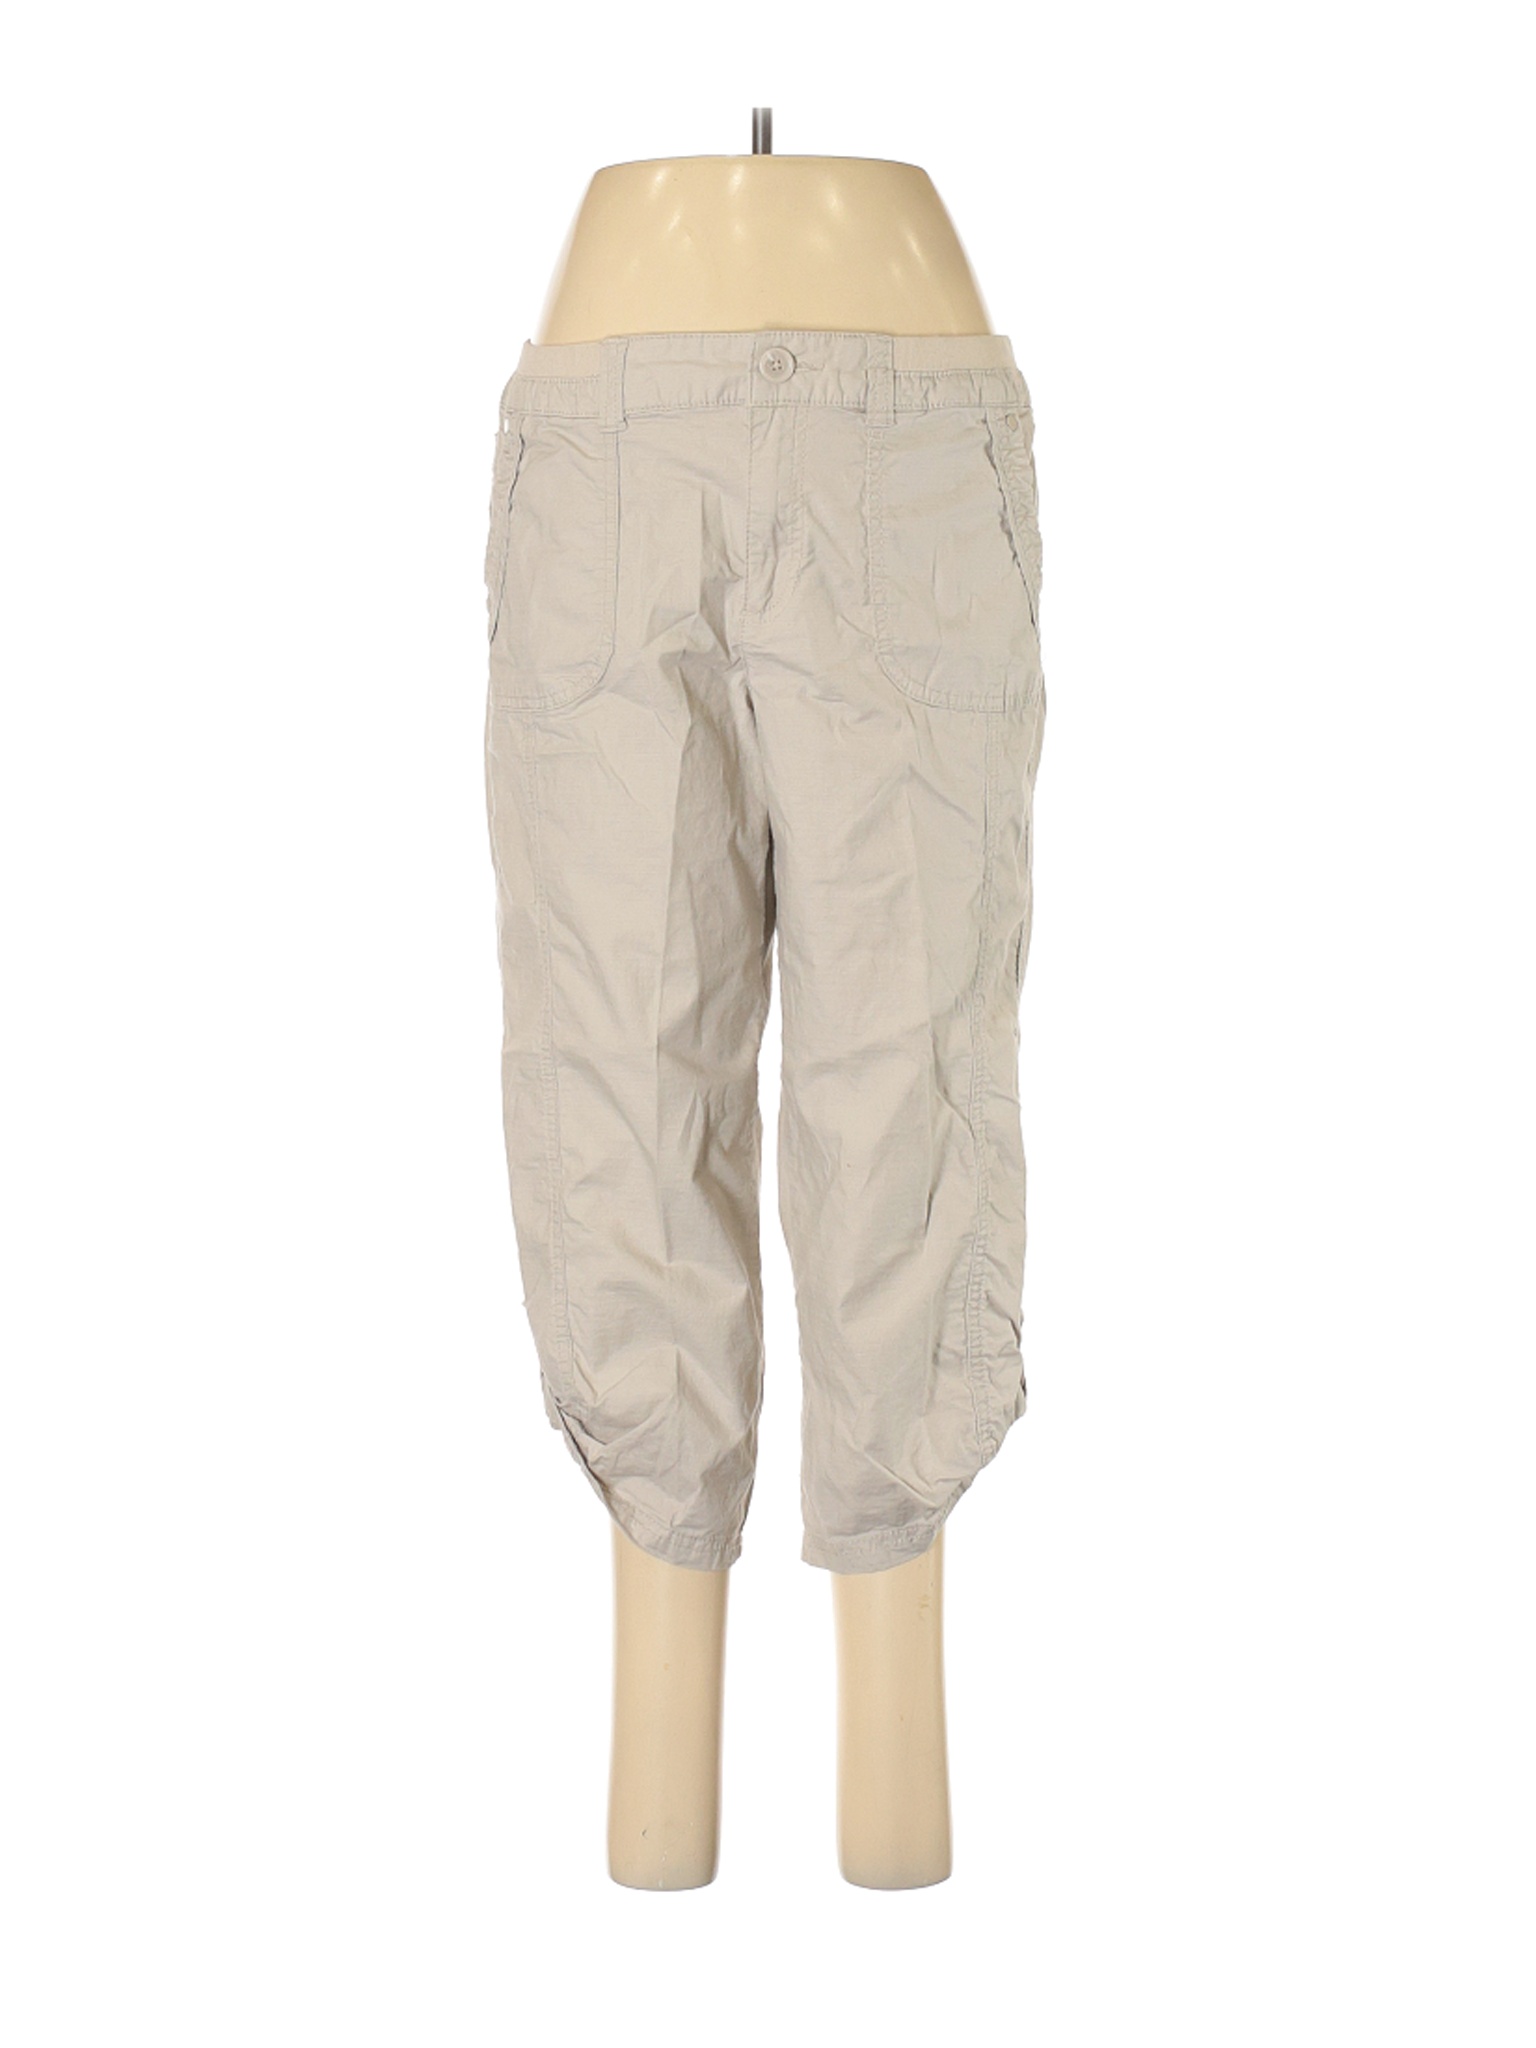 Khakis & Co Women Brown Casual Pants 8 | eBay